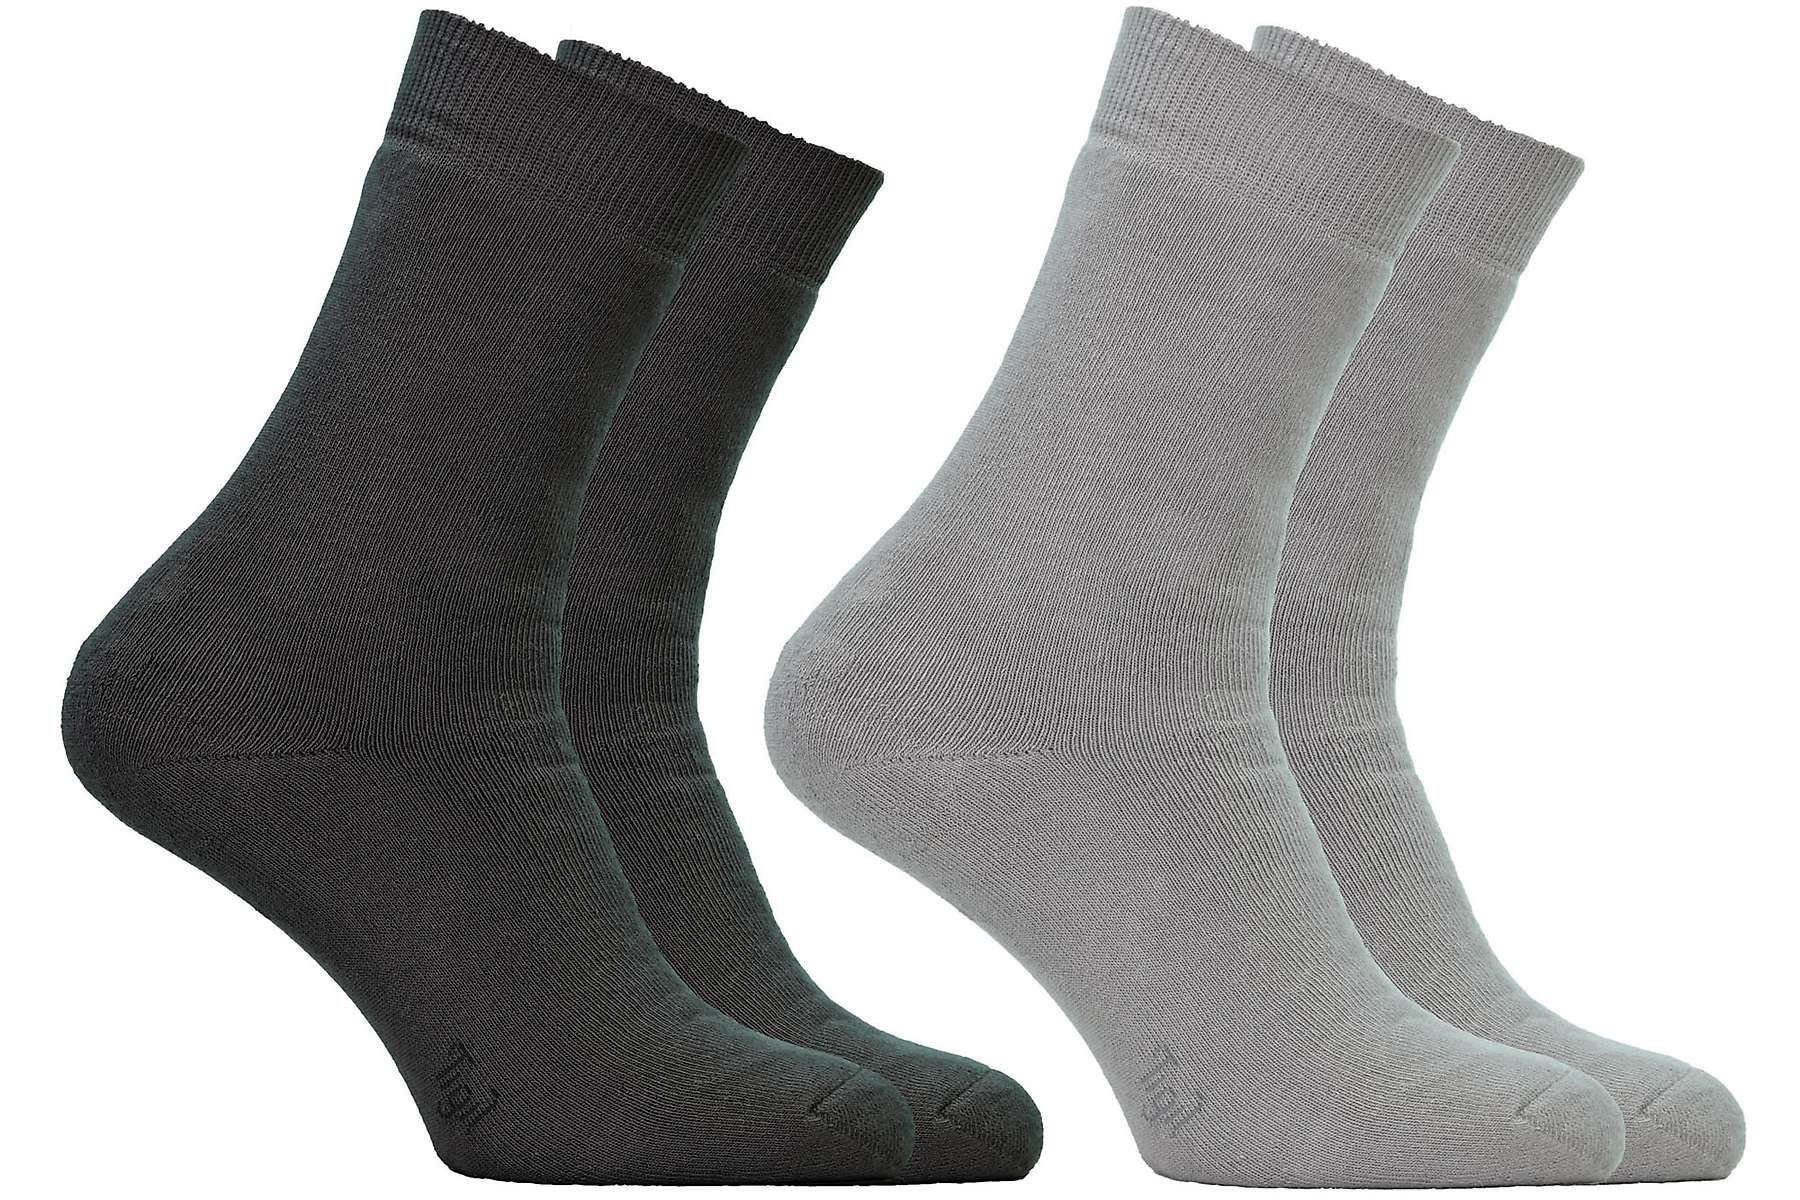 Chaussettes de qualité en coton bio pour homme - gris clair